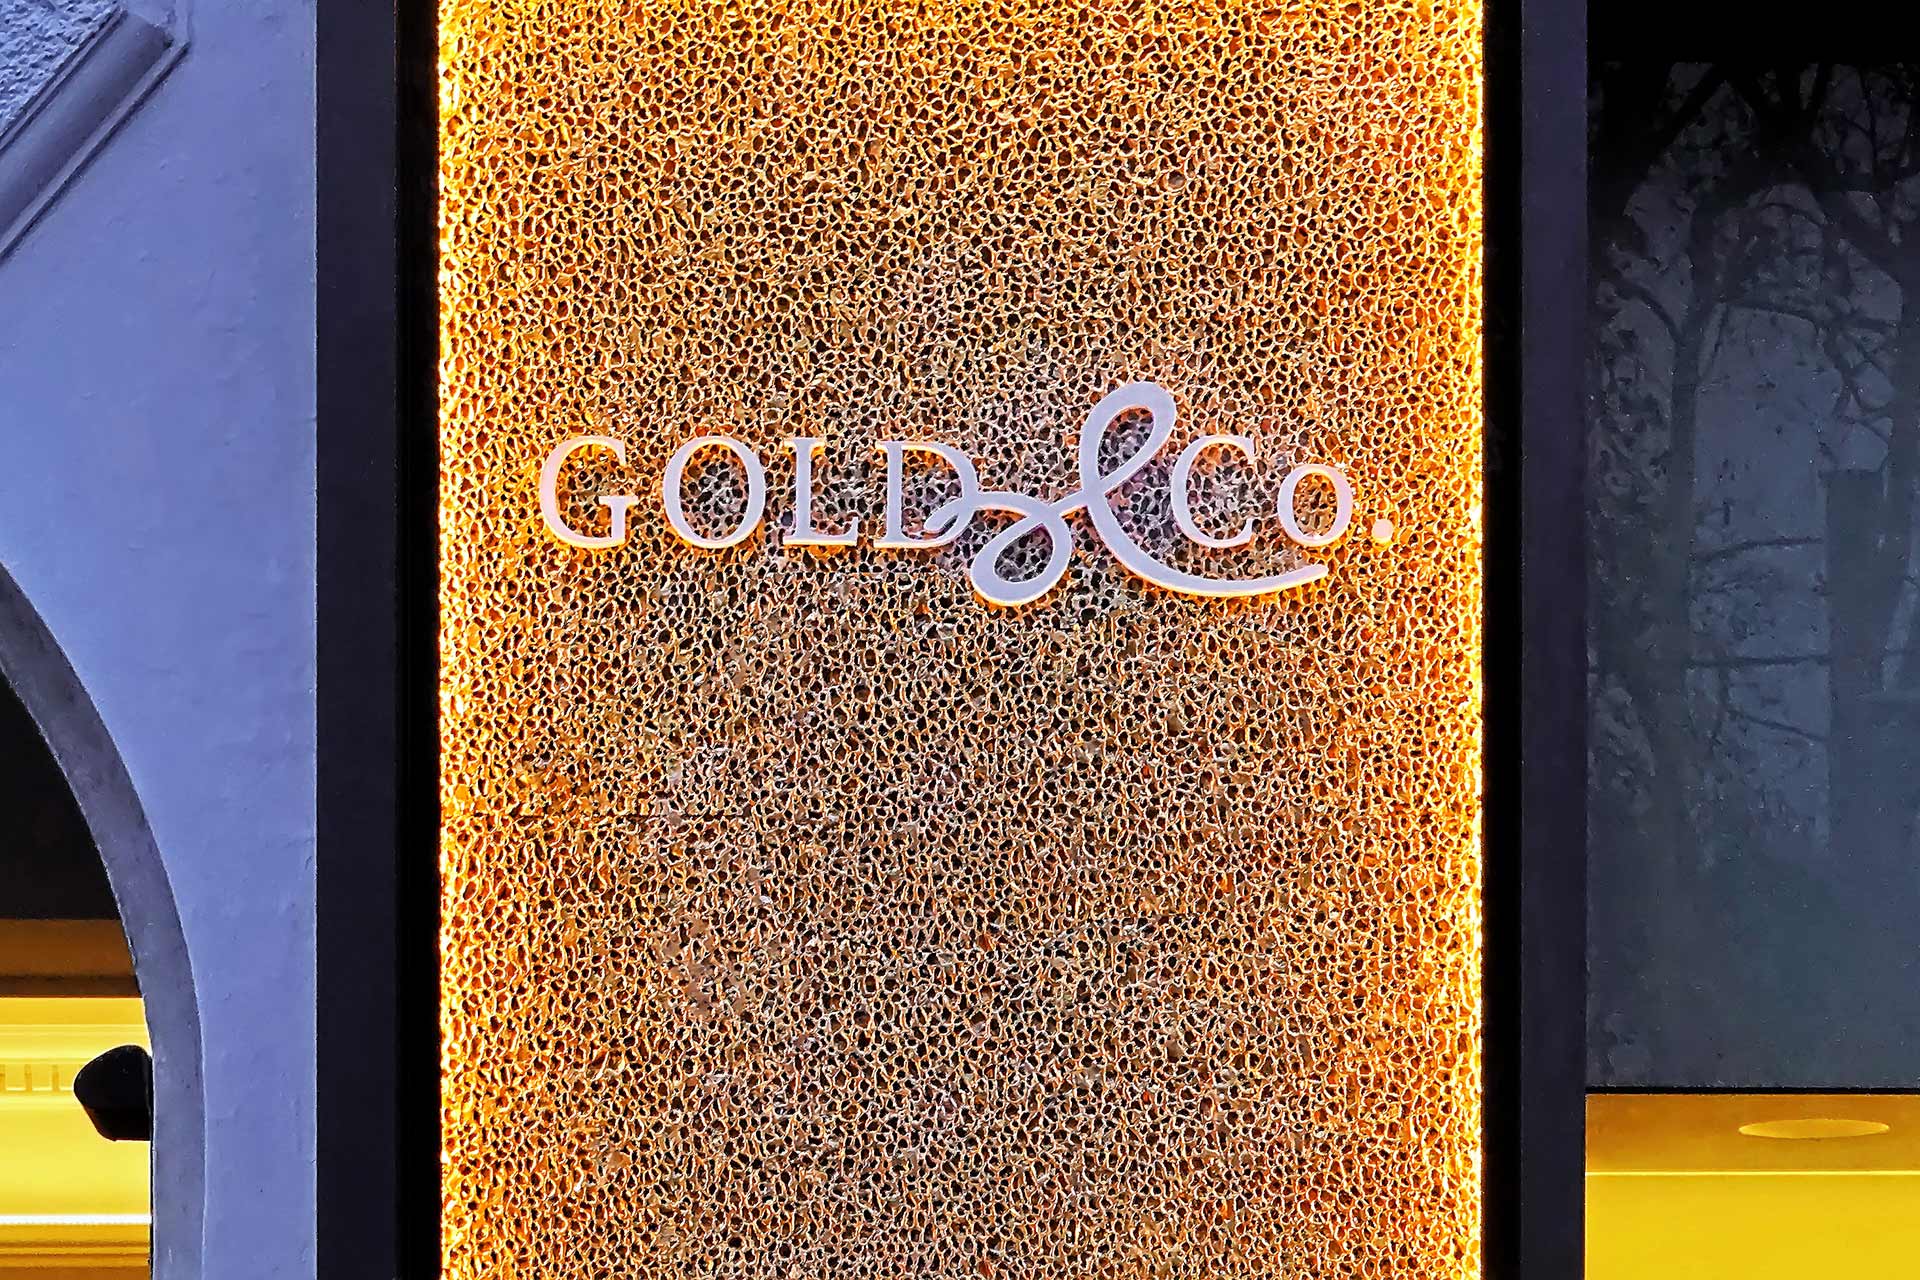 2013 - GOLD & CO. - Shopbeleuchtung, A-1090 Wien